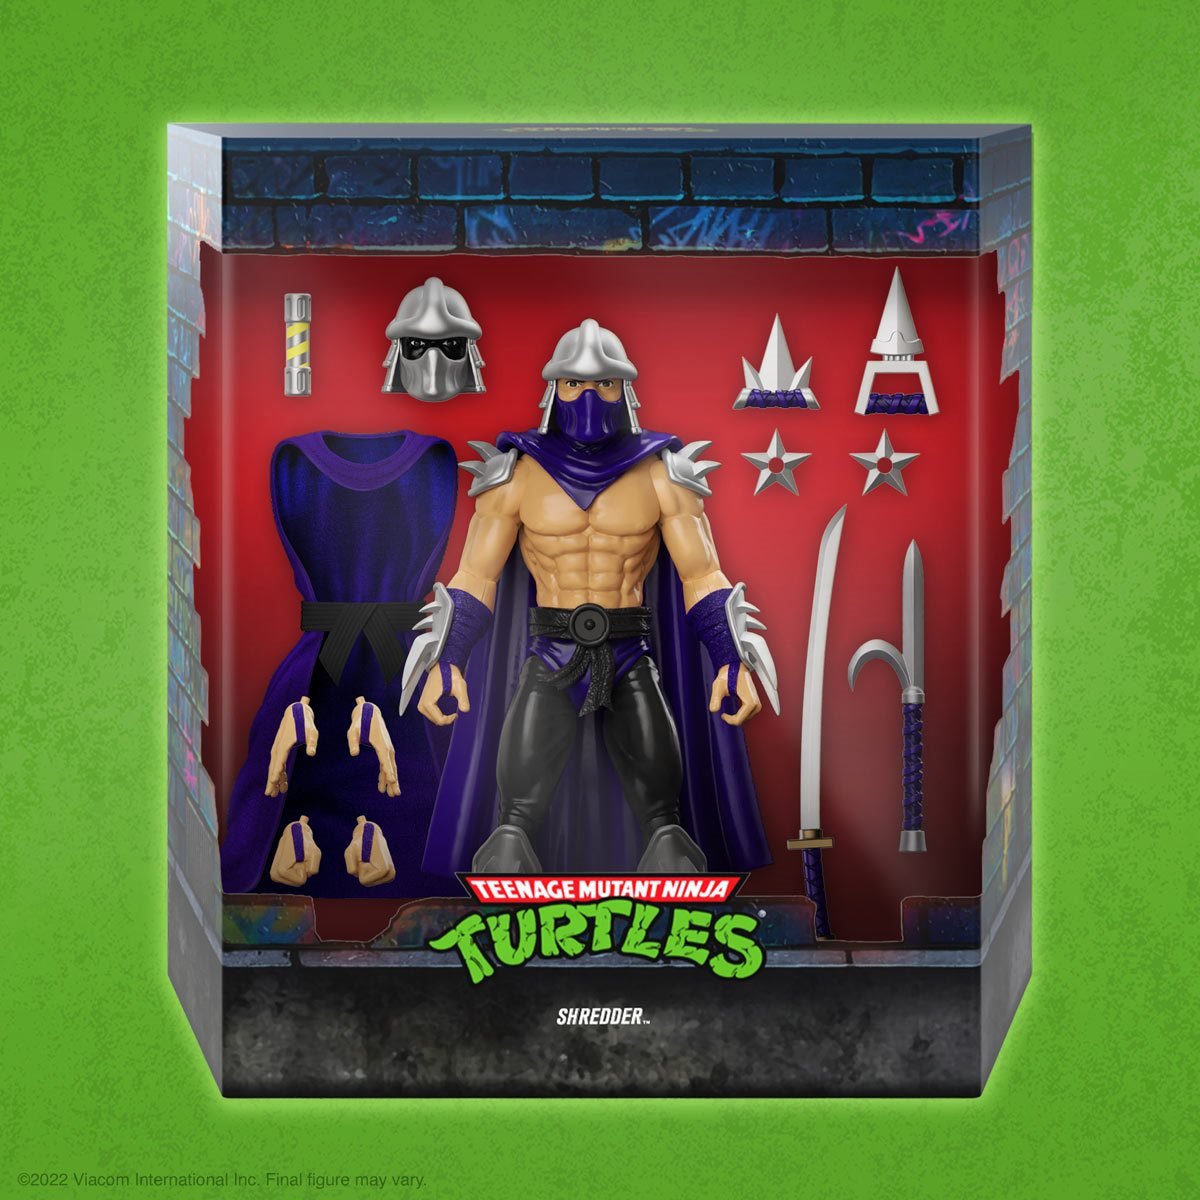 SUPER7 Teenage Mutant Ninja Turtles Ultimates Shredder 7-Inch Action Figure